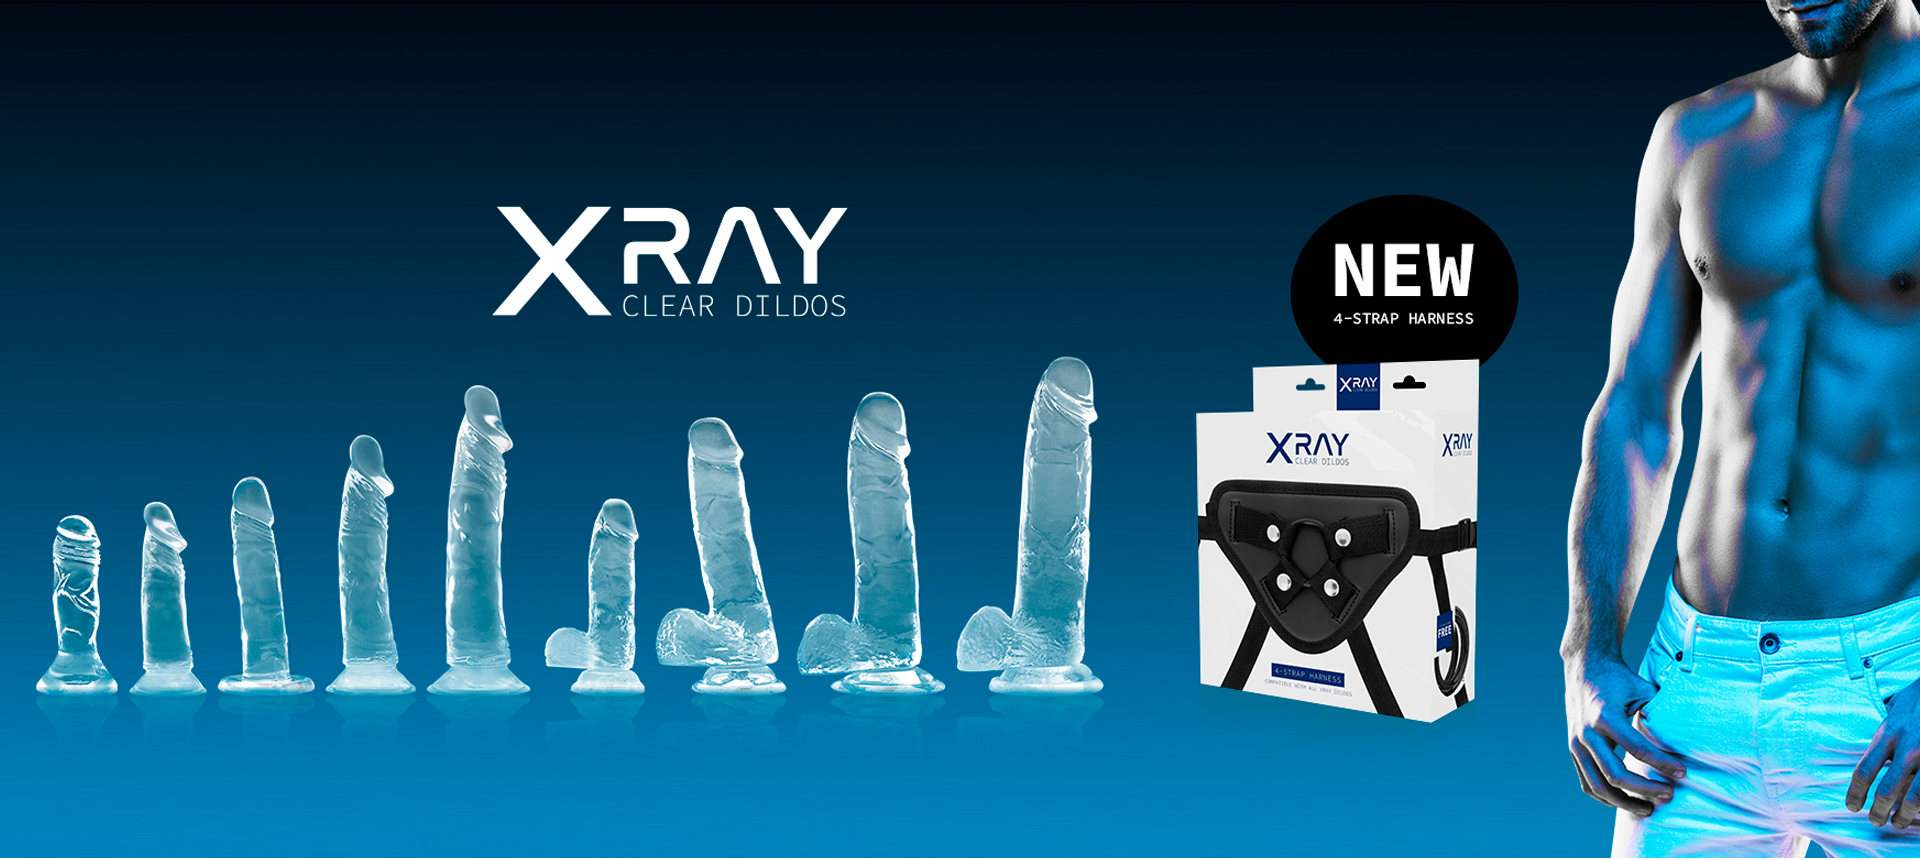 Collezione di dildo trasparenti di alta qualità XRAY